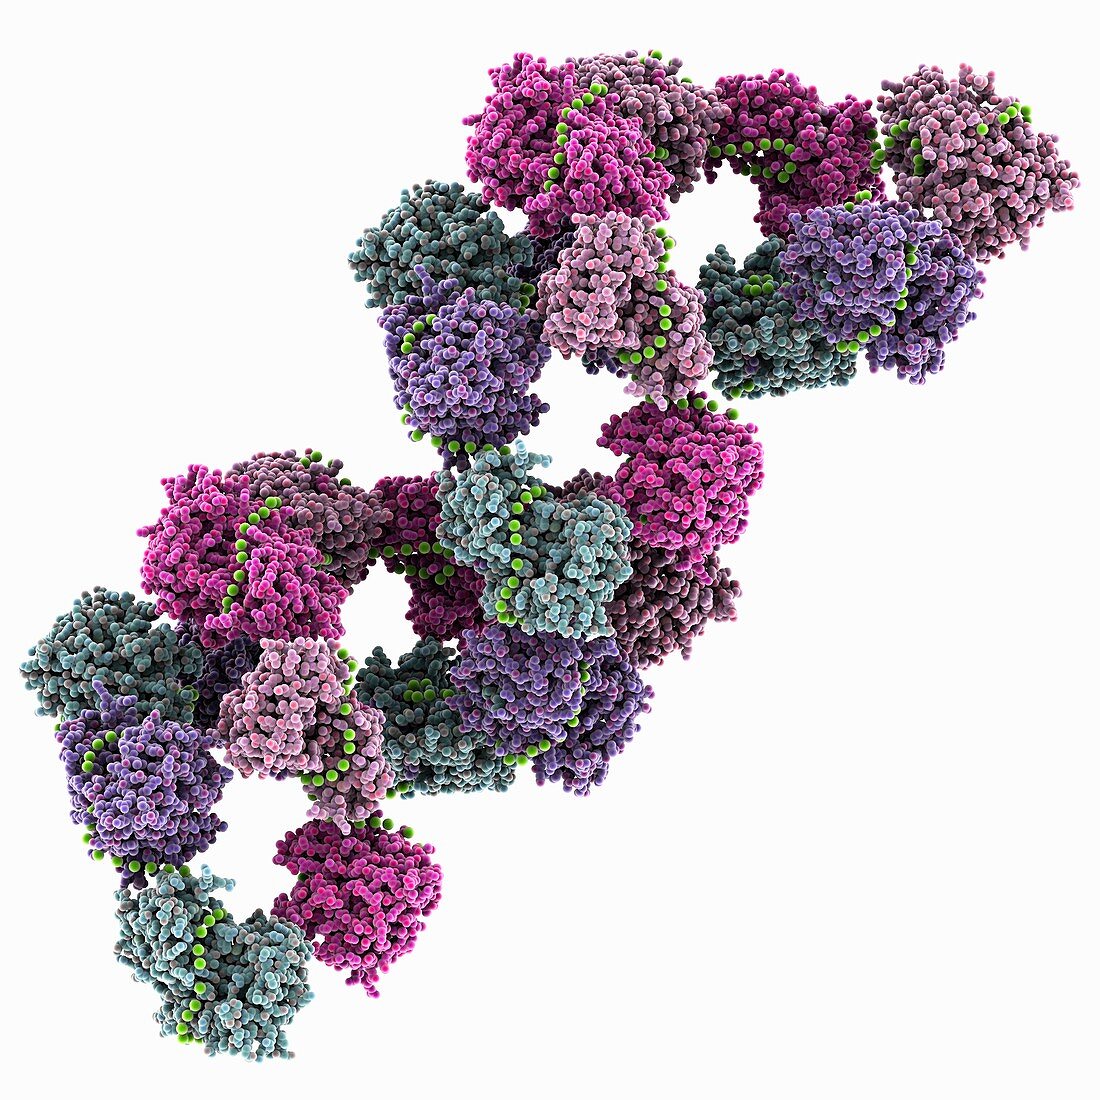 Influenza A ribonucleoprotein complex